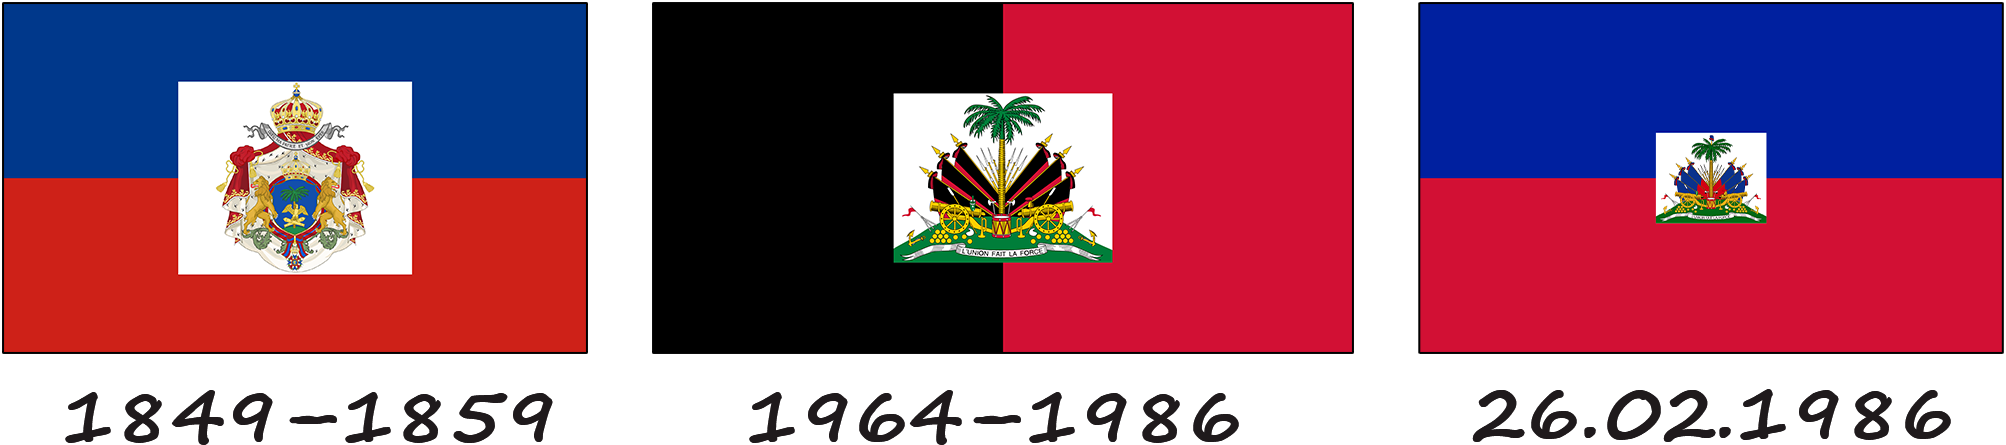 Historia de la bandera de Haití